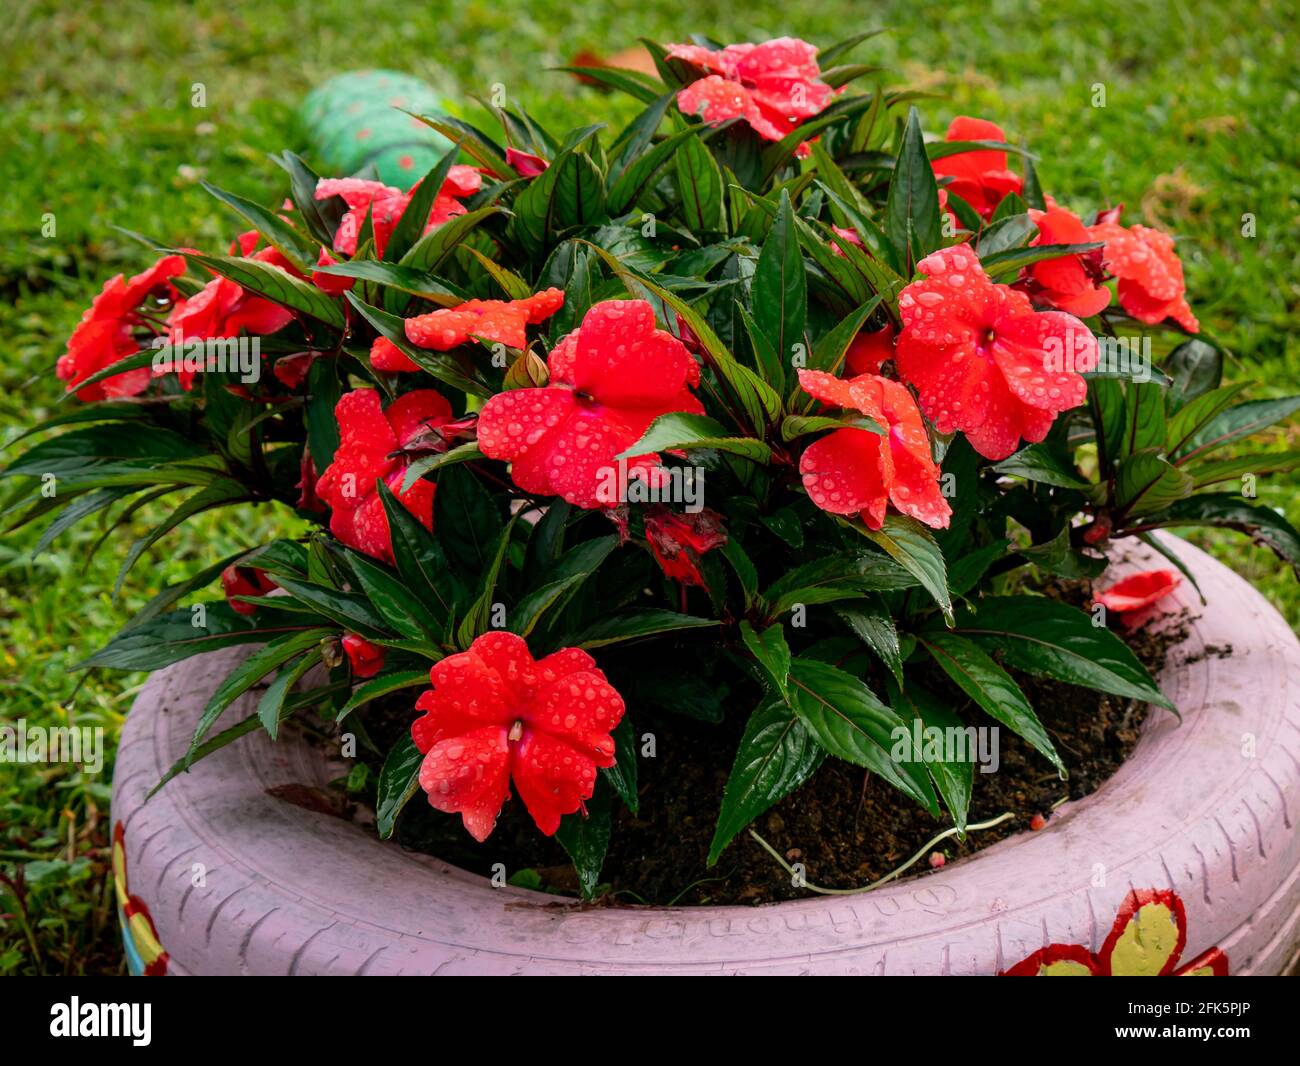 La Nuova Guinea Impatiens (Impatiens hawkeri), un bel fiori rossi piantati in un pneumatico in un giardino Foto Stock